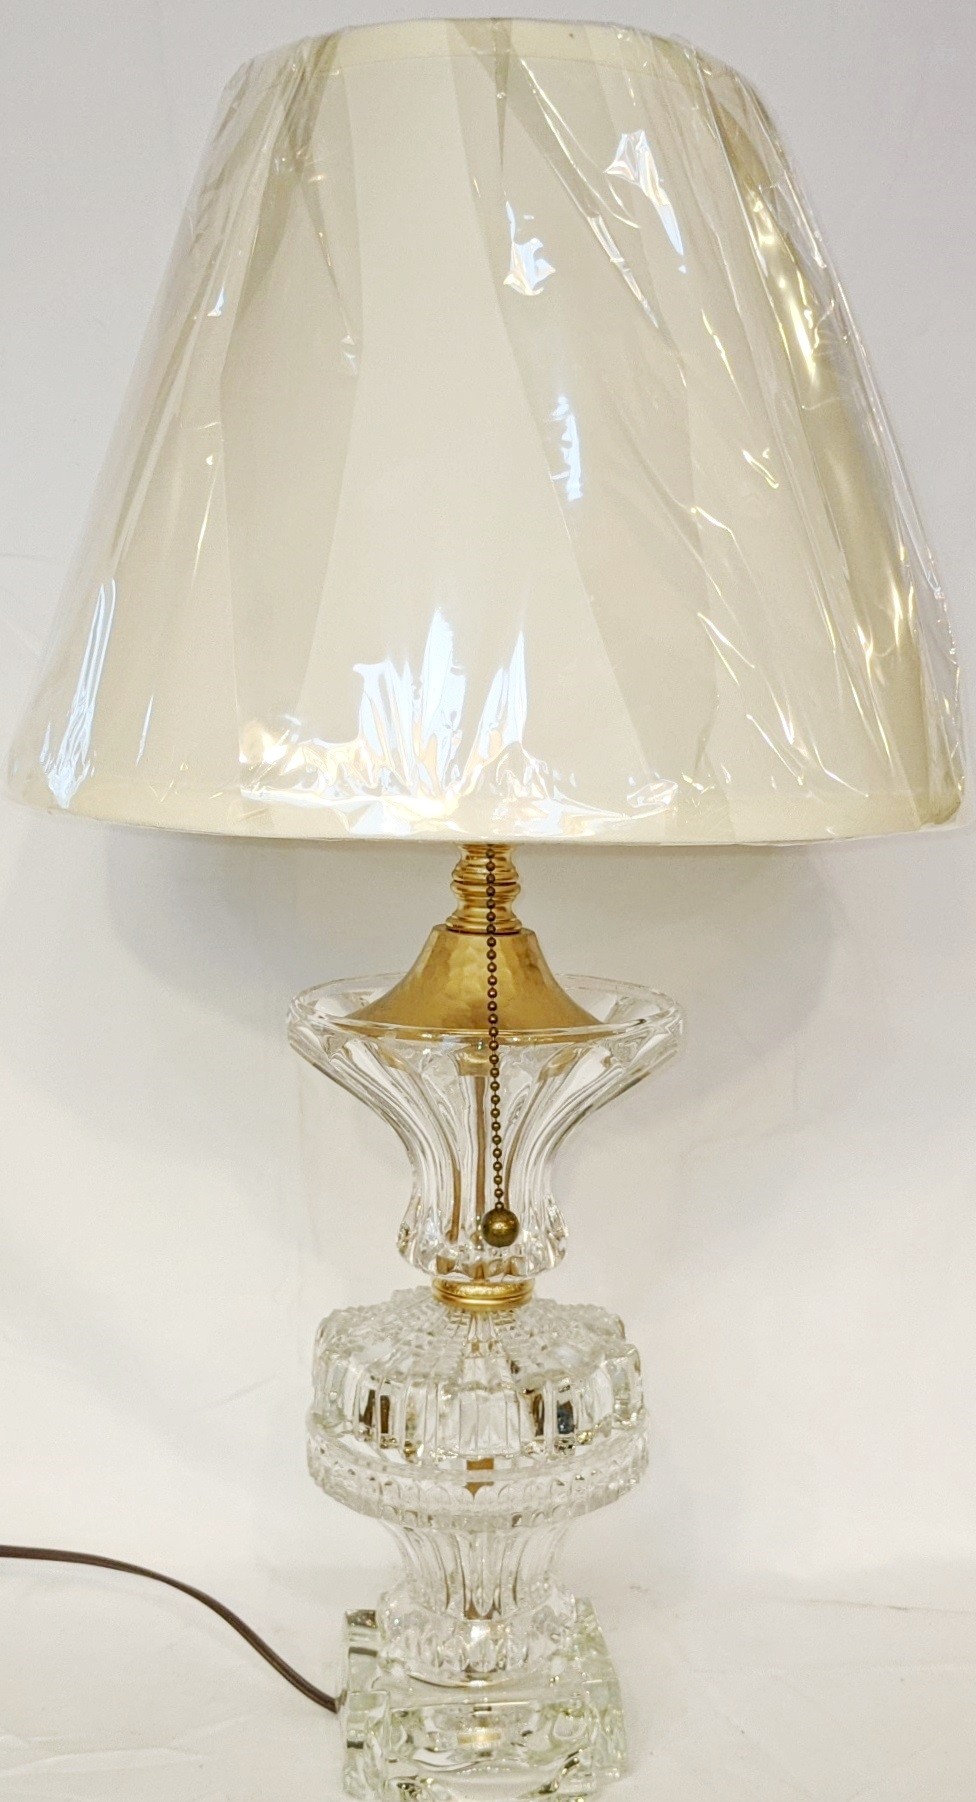 Vintage Crystal Lamp 21"H - Sale !